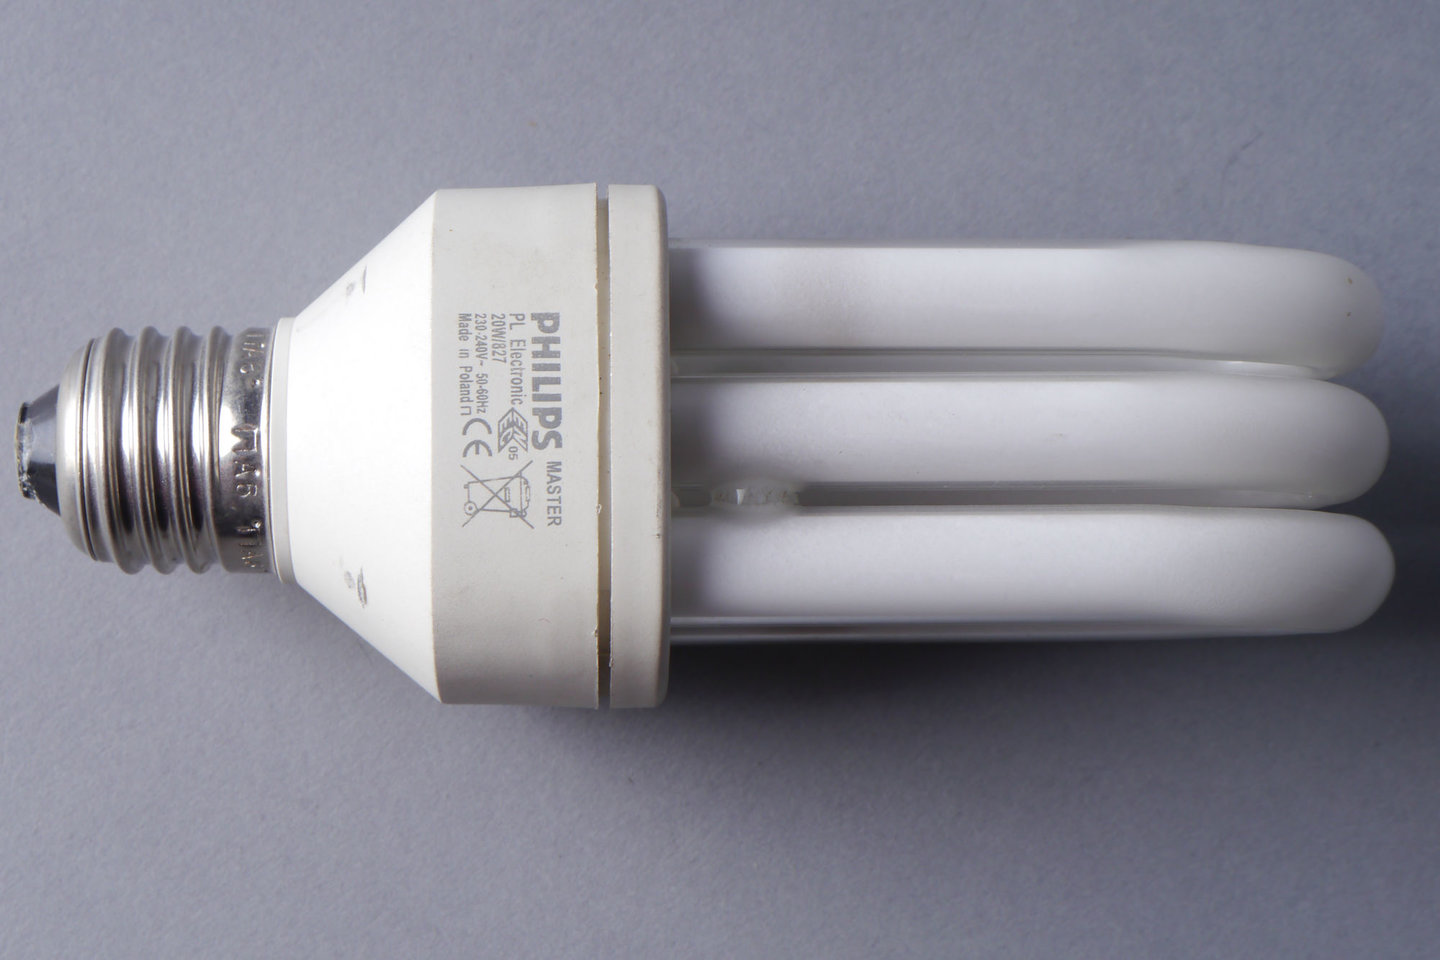 Lagedruk gasontladingslamp van het merk Philips